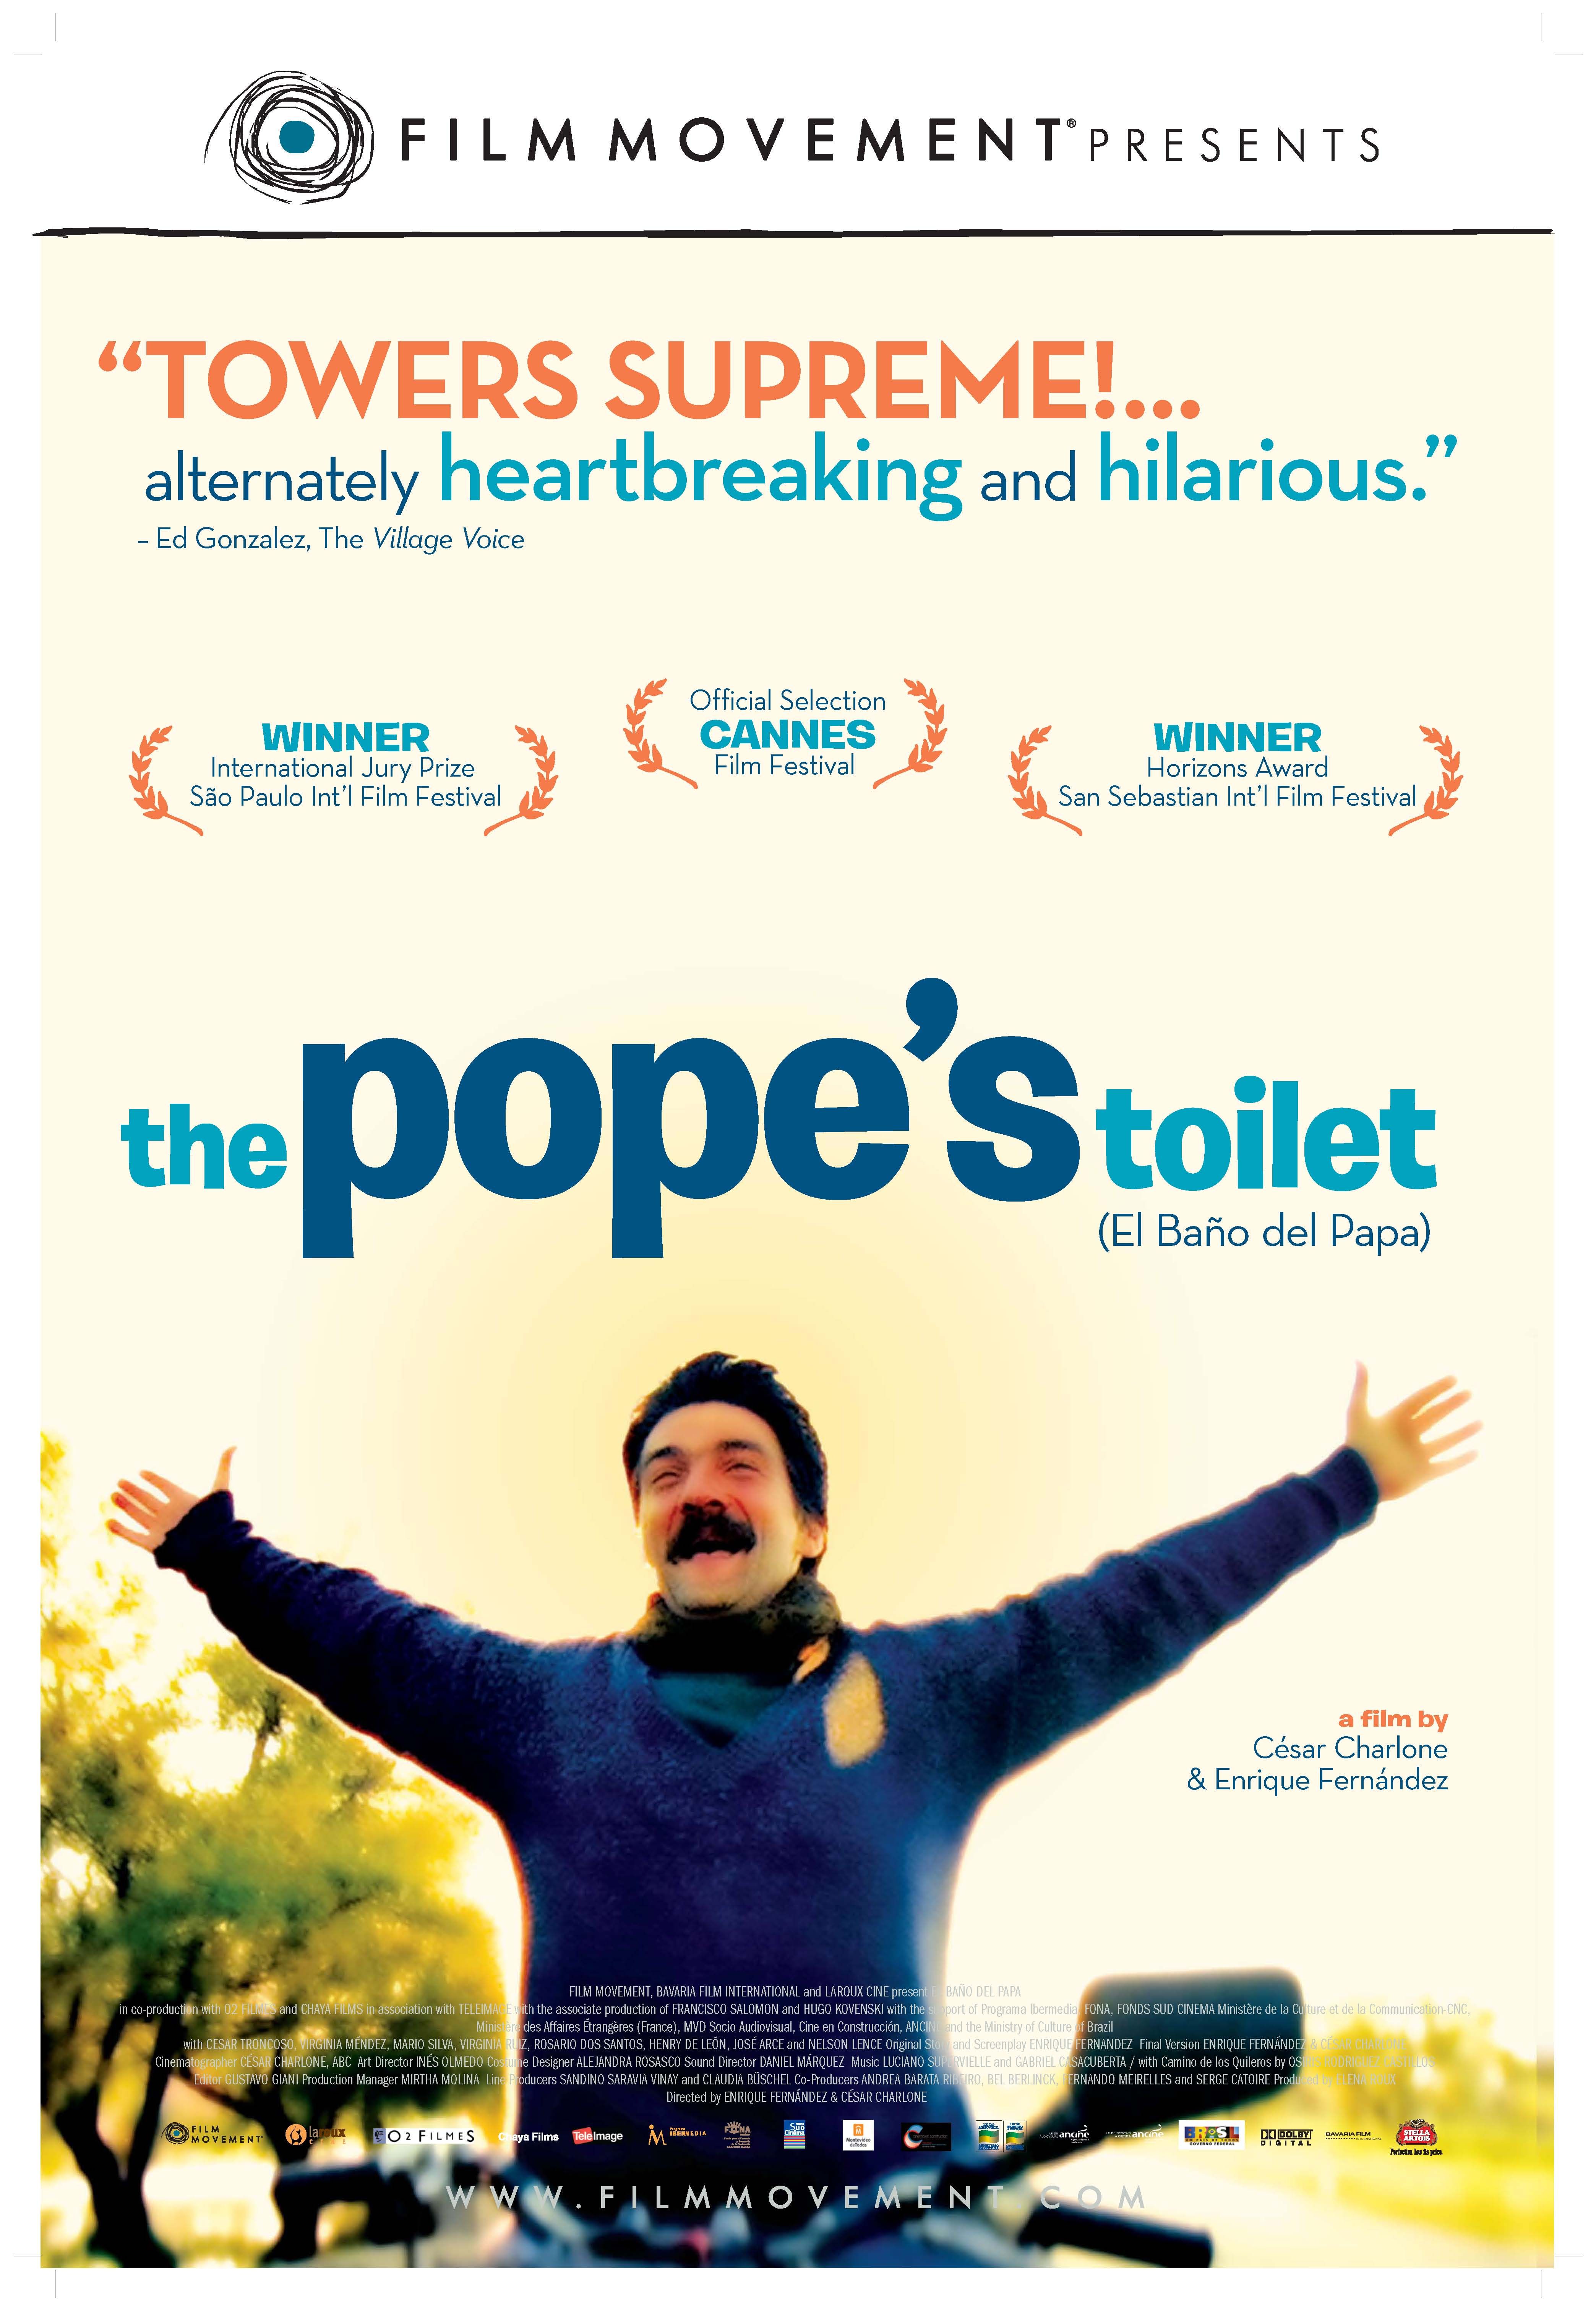 „Papieska toaleta", Przegląd Filmów Urugwajskich (źródło: materiały prasowe)